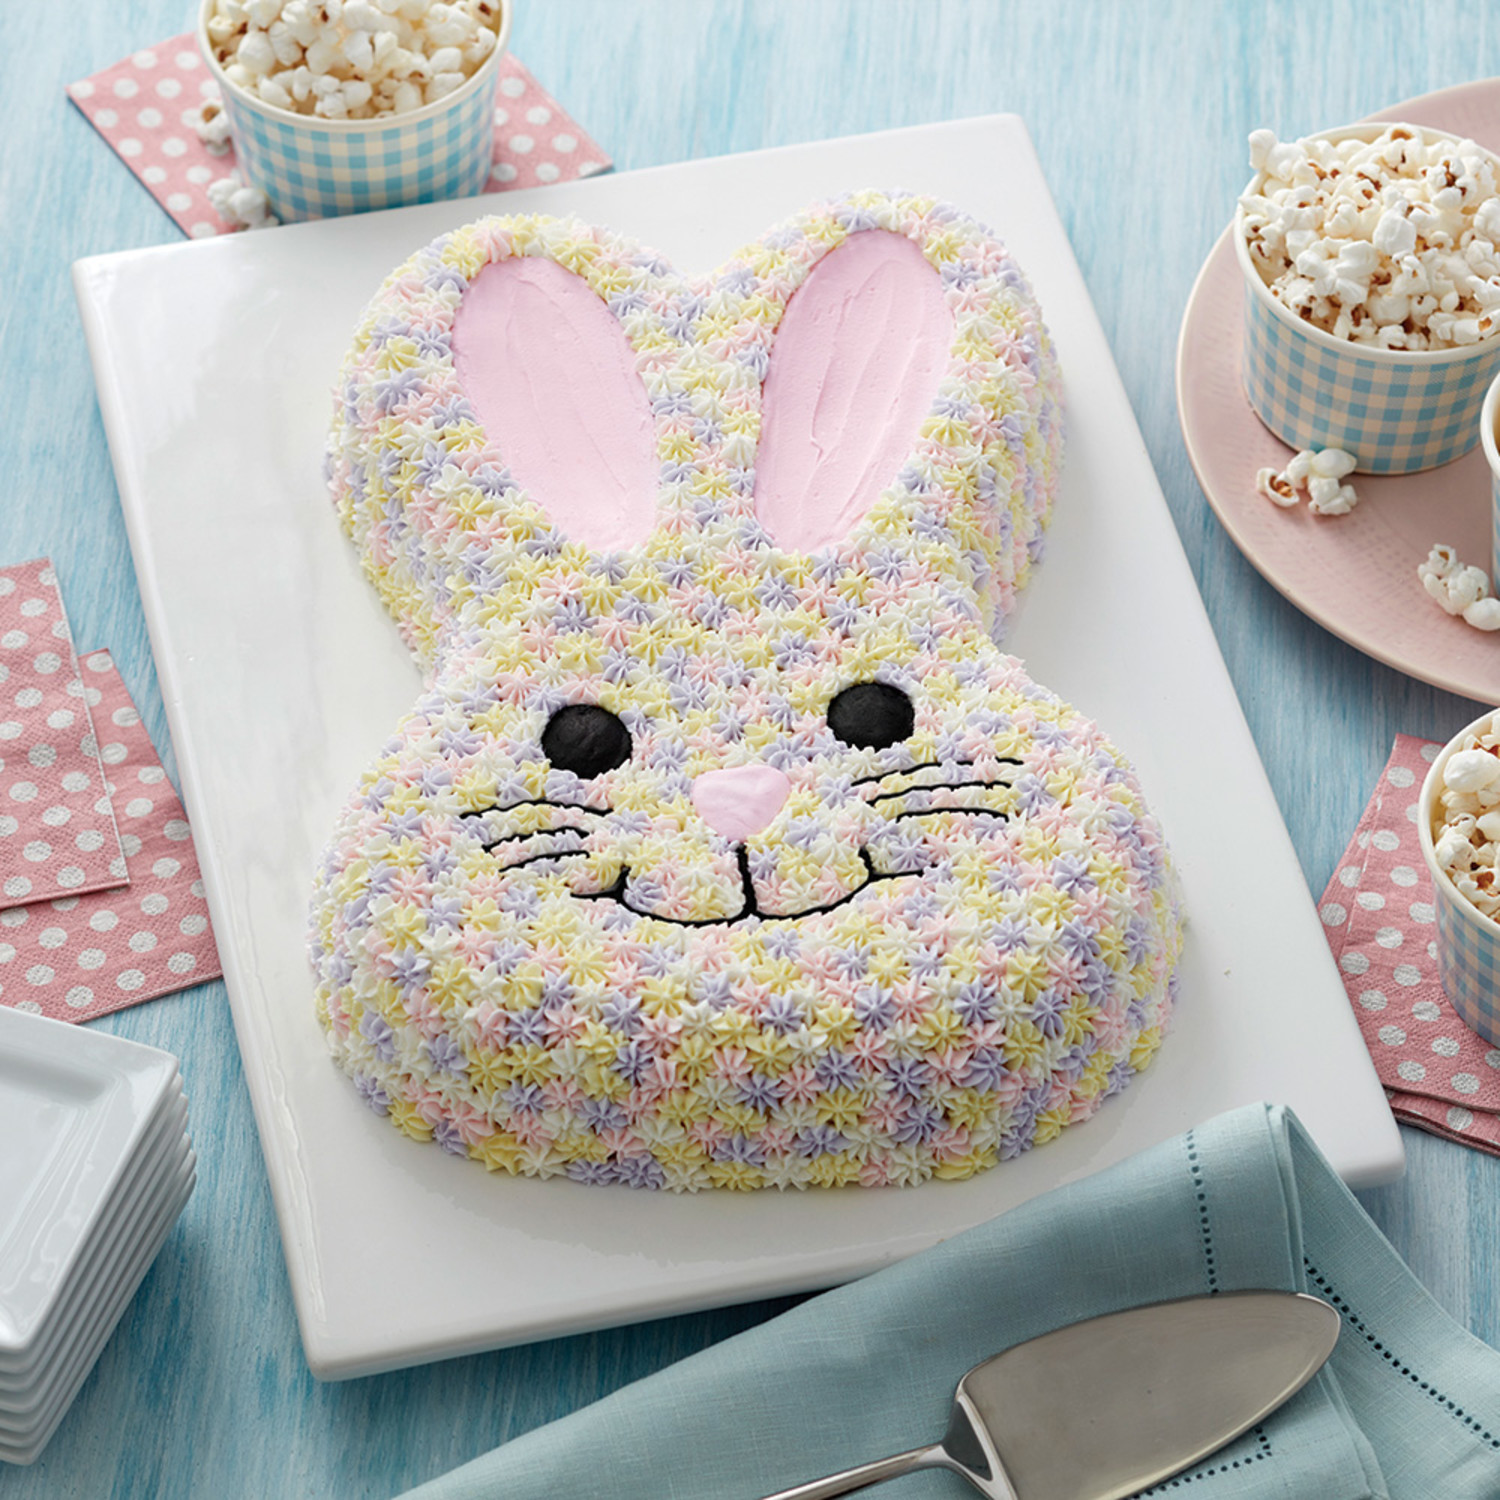 Easy Bunny Cake Recipe - BettyCrocker.com